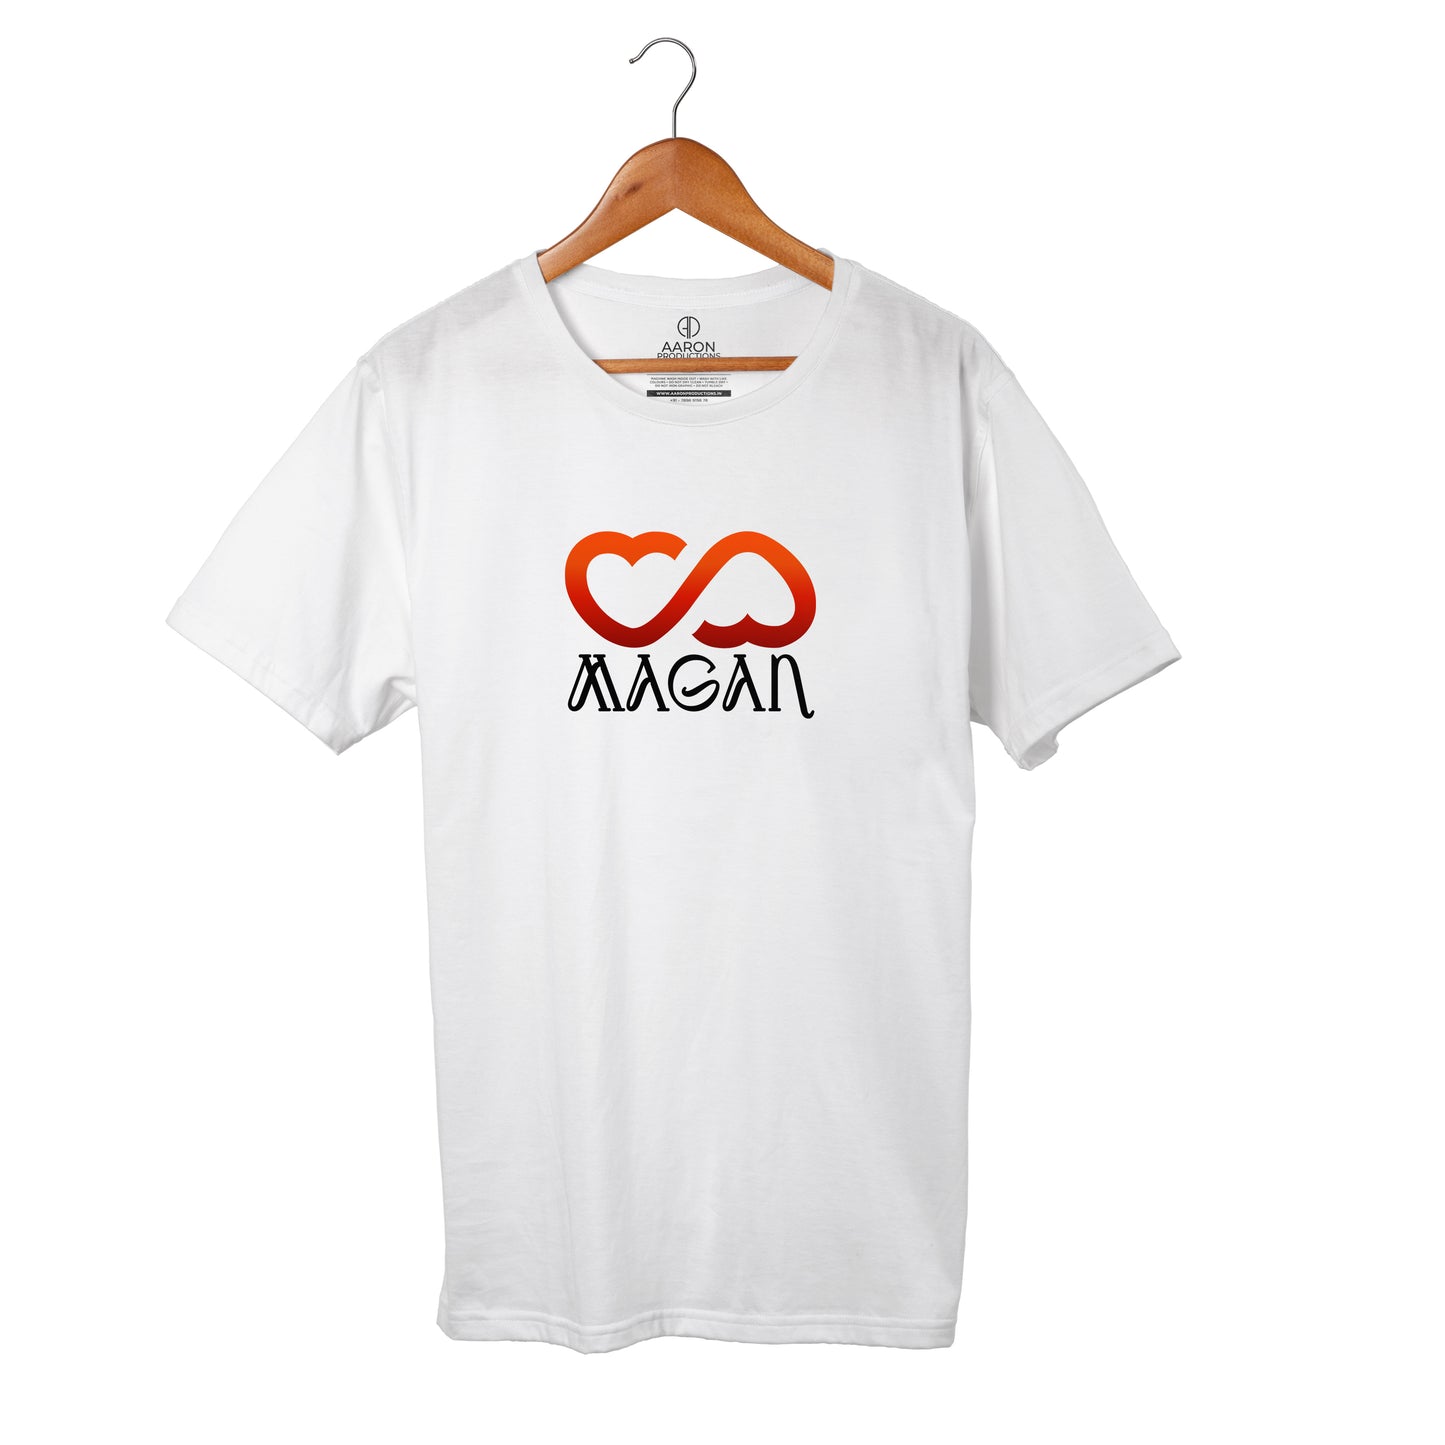 06 Magan - Jaago Men tshirt